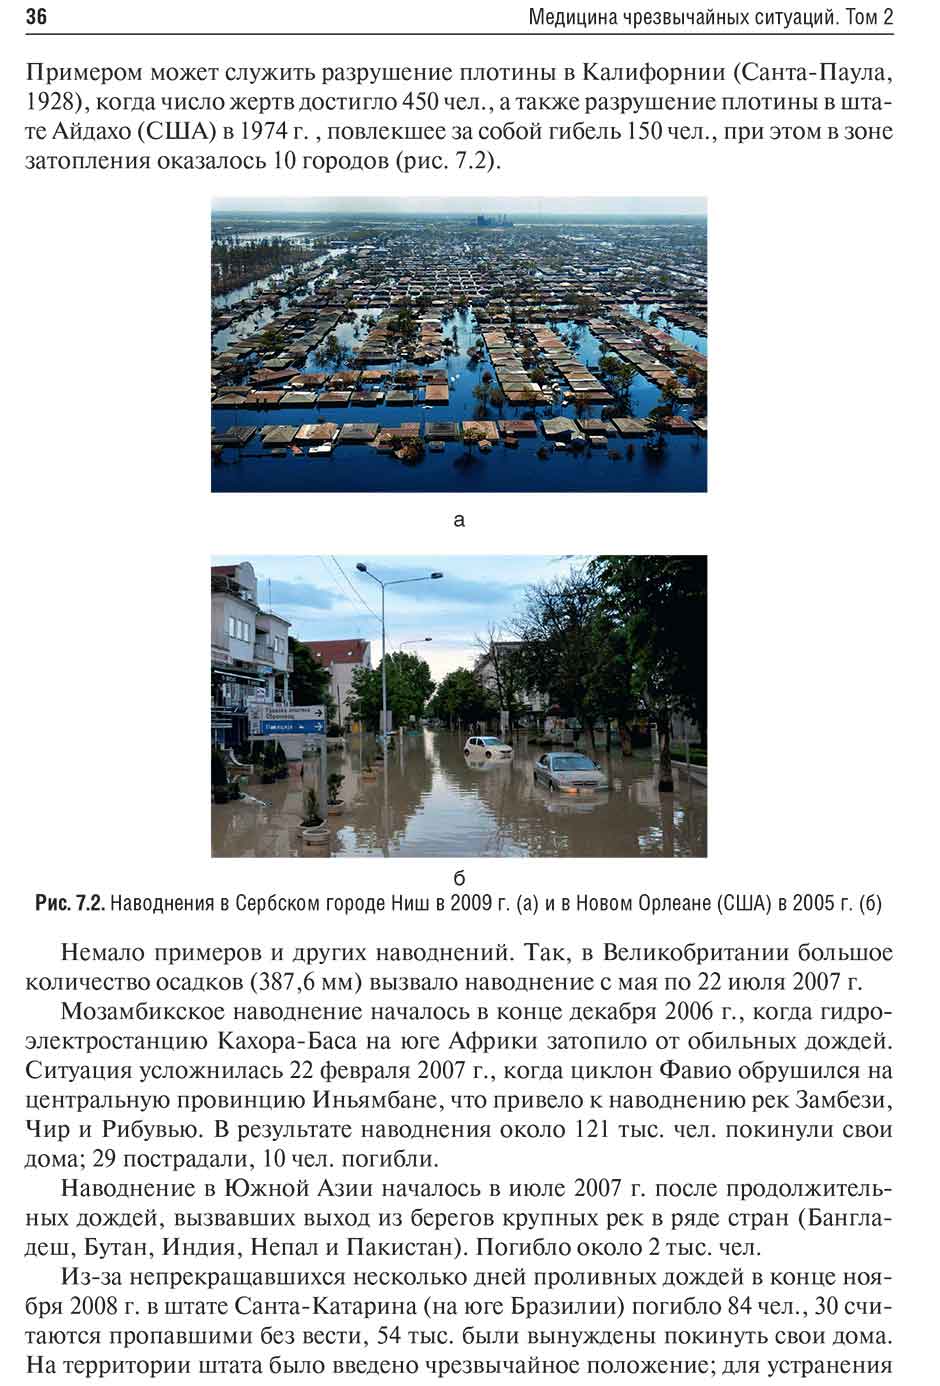 Рис. 7.2. Наводнения в Сербском городе Ниш в 2009